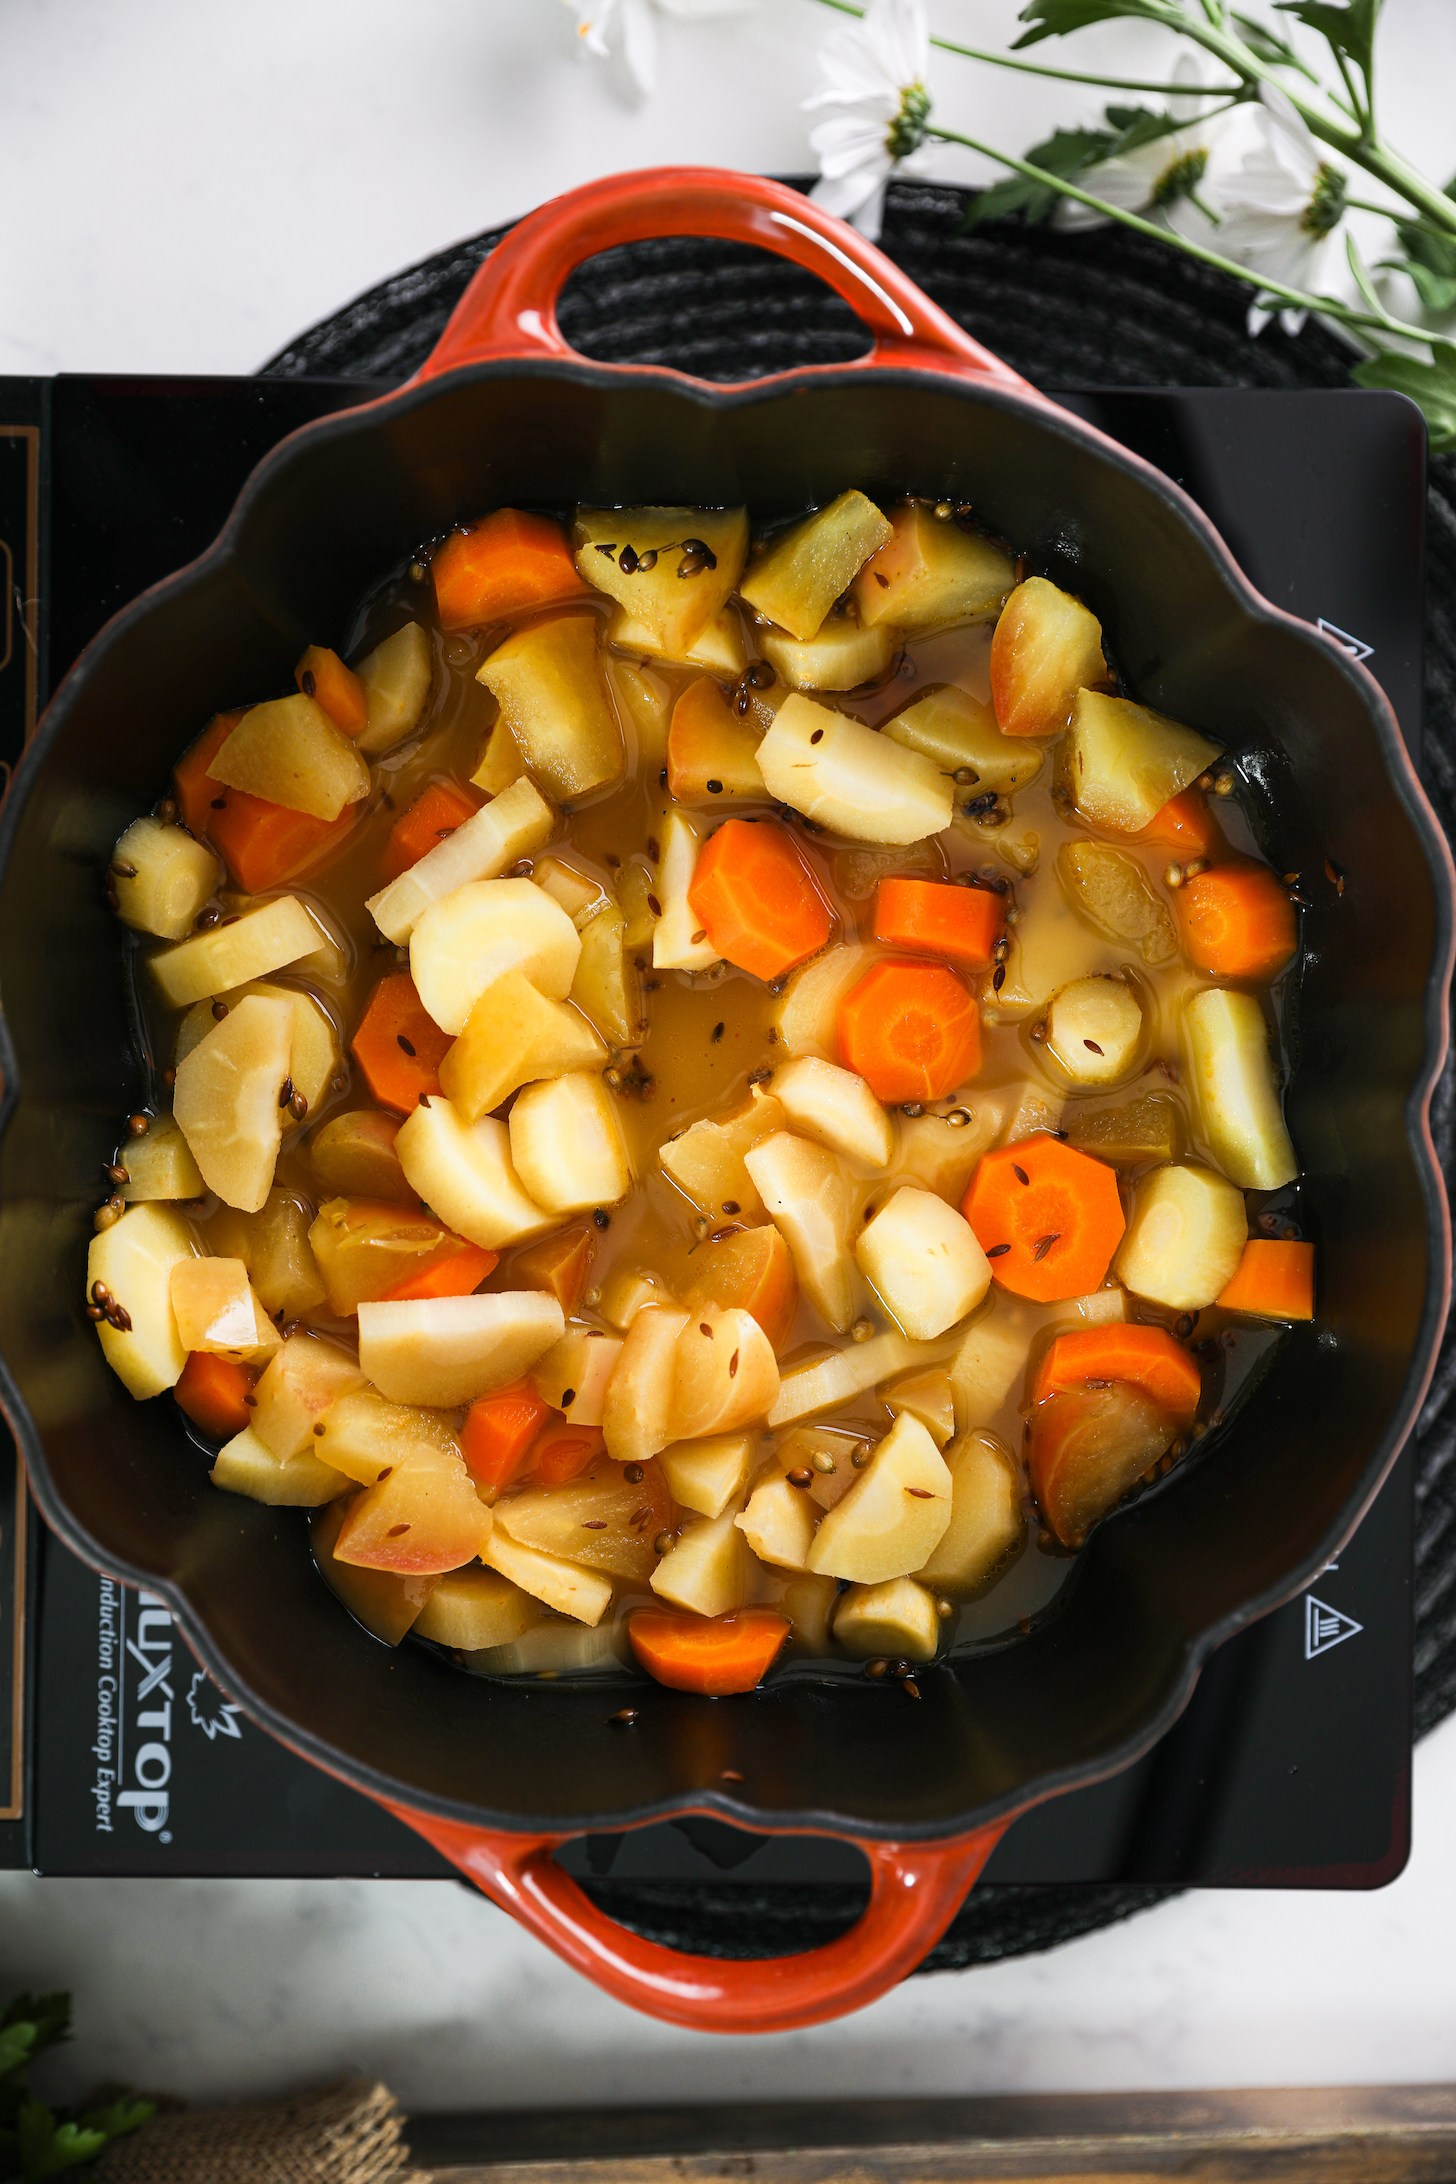 نمای بالای سر جعفری خرد شده، سیب و هویج موجود در داخل قابلمه پخت و پز.